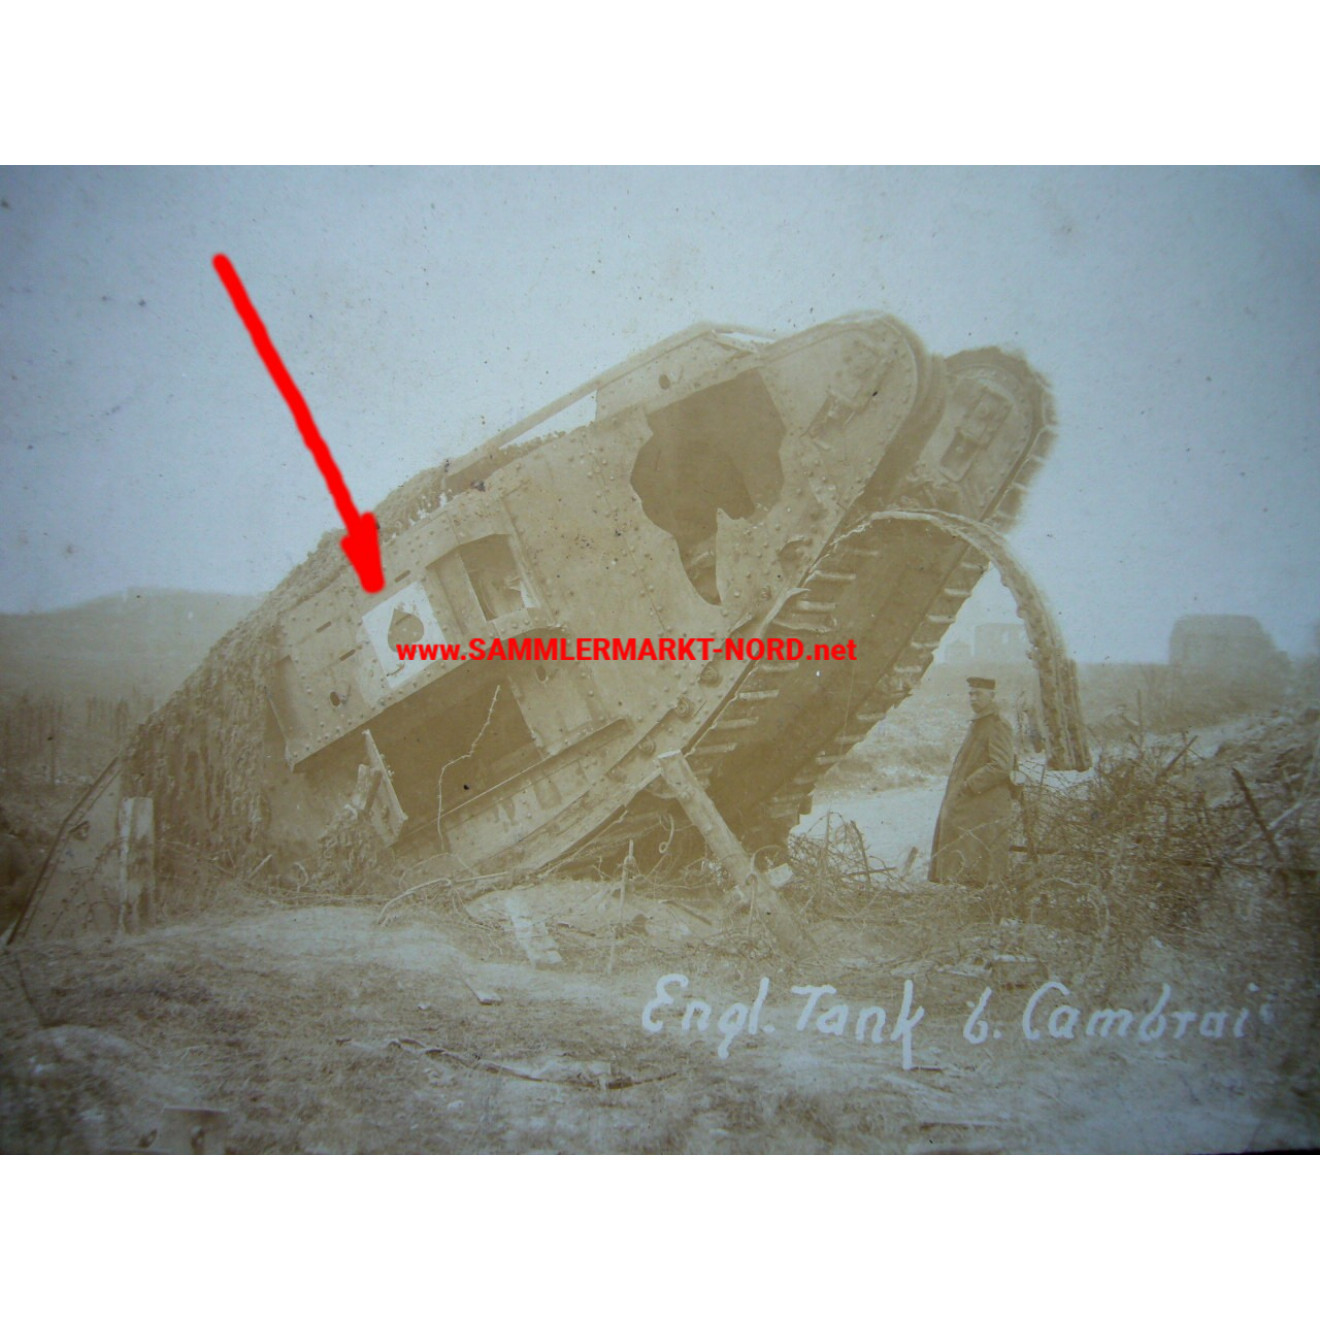 2 x Foto 1918 bei Cambrai (Frankreich) - zerstörter britischer Panzer mit Abzeichen